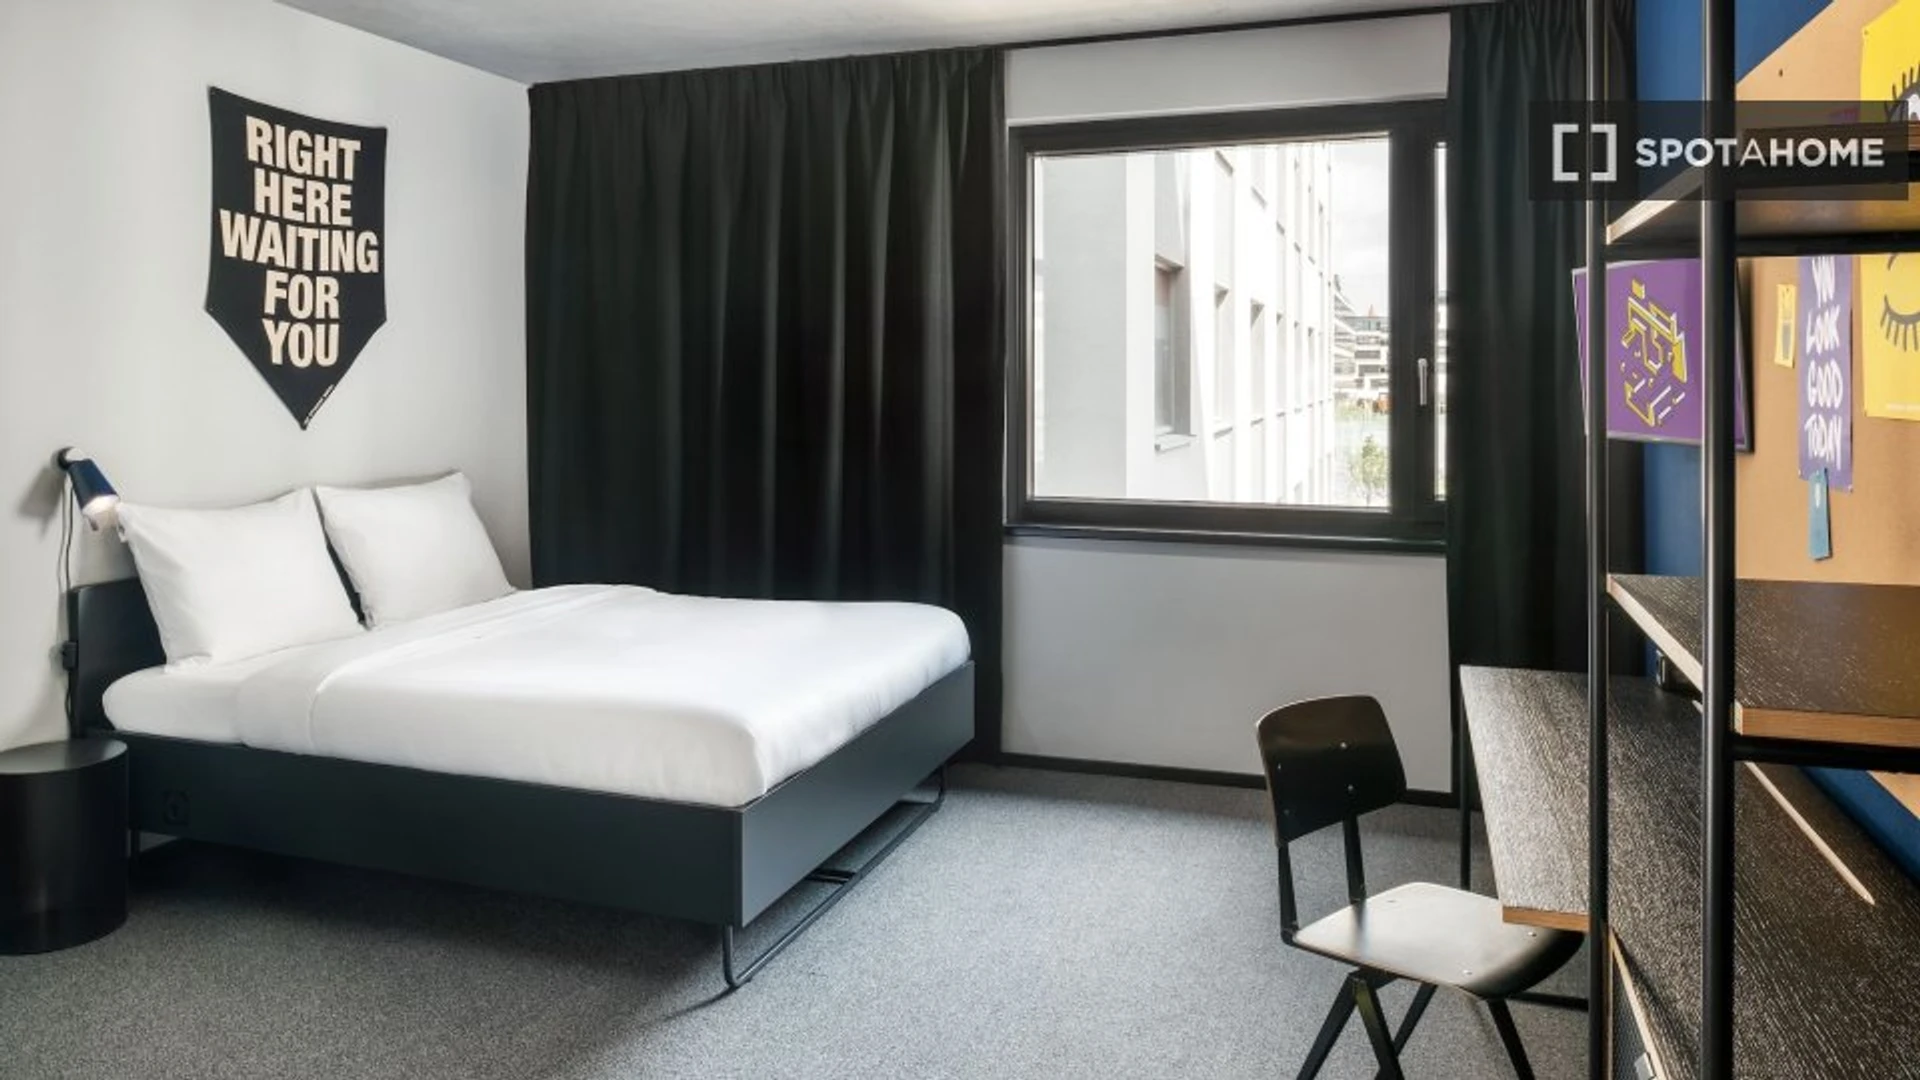 Alquiler de habitación en piso compartido en Viena